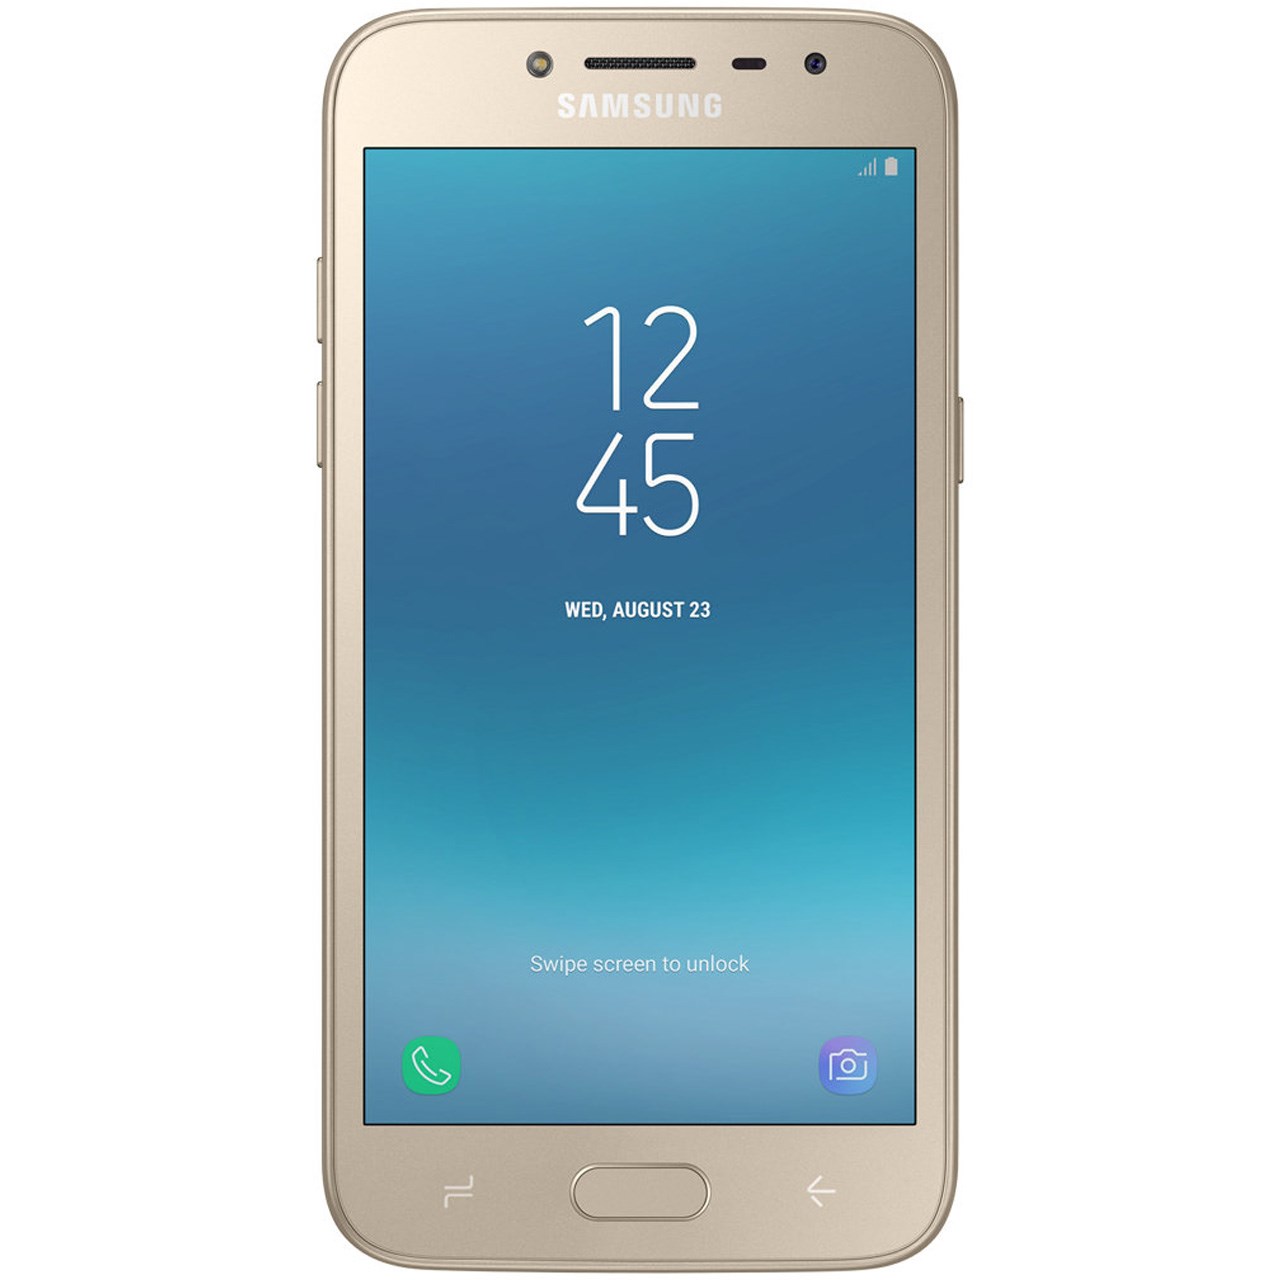 گوشی موبایل سامسونگ مدل Galaxy Grand Prime Pro SM-J250F دو سیم کارت ظرفیت 16 گیگابایت - با برچسب قیمت مصرف کننده